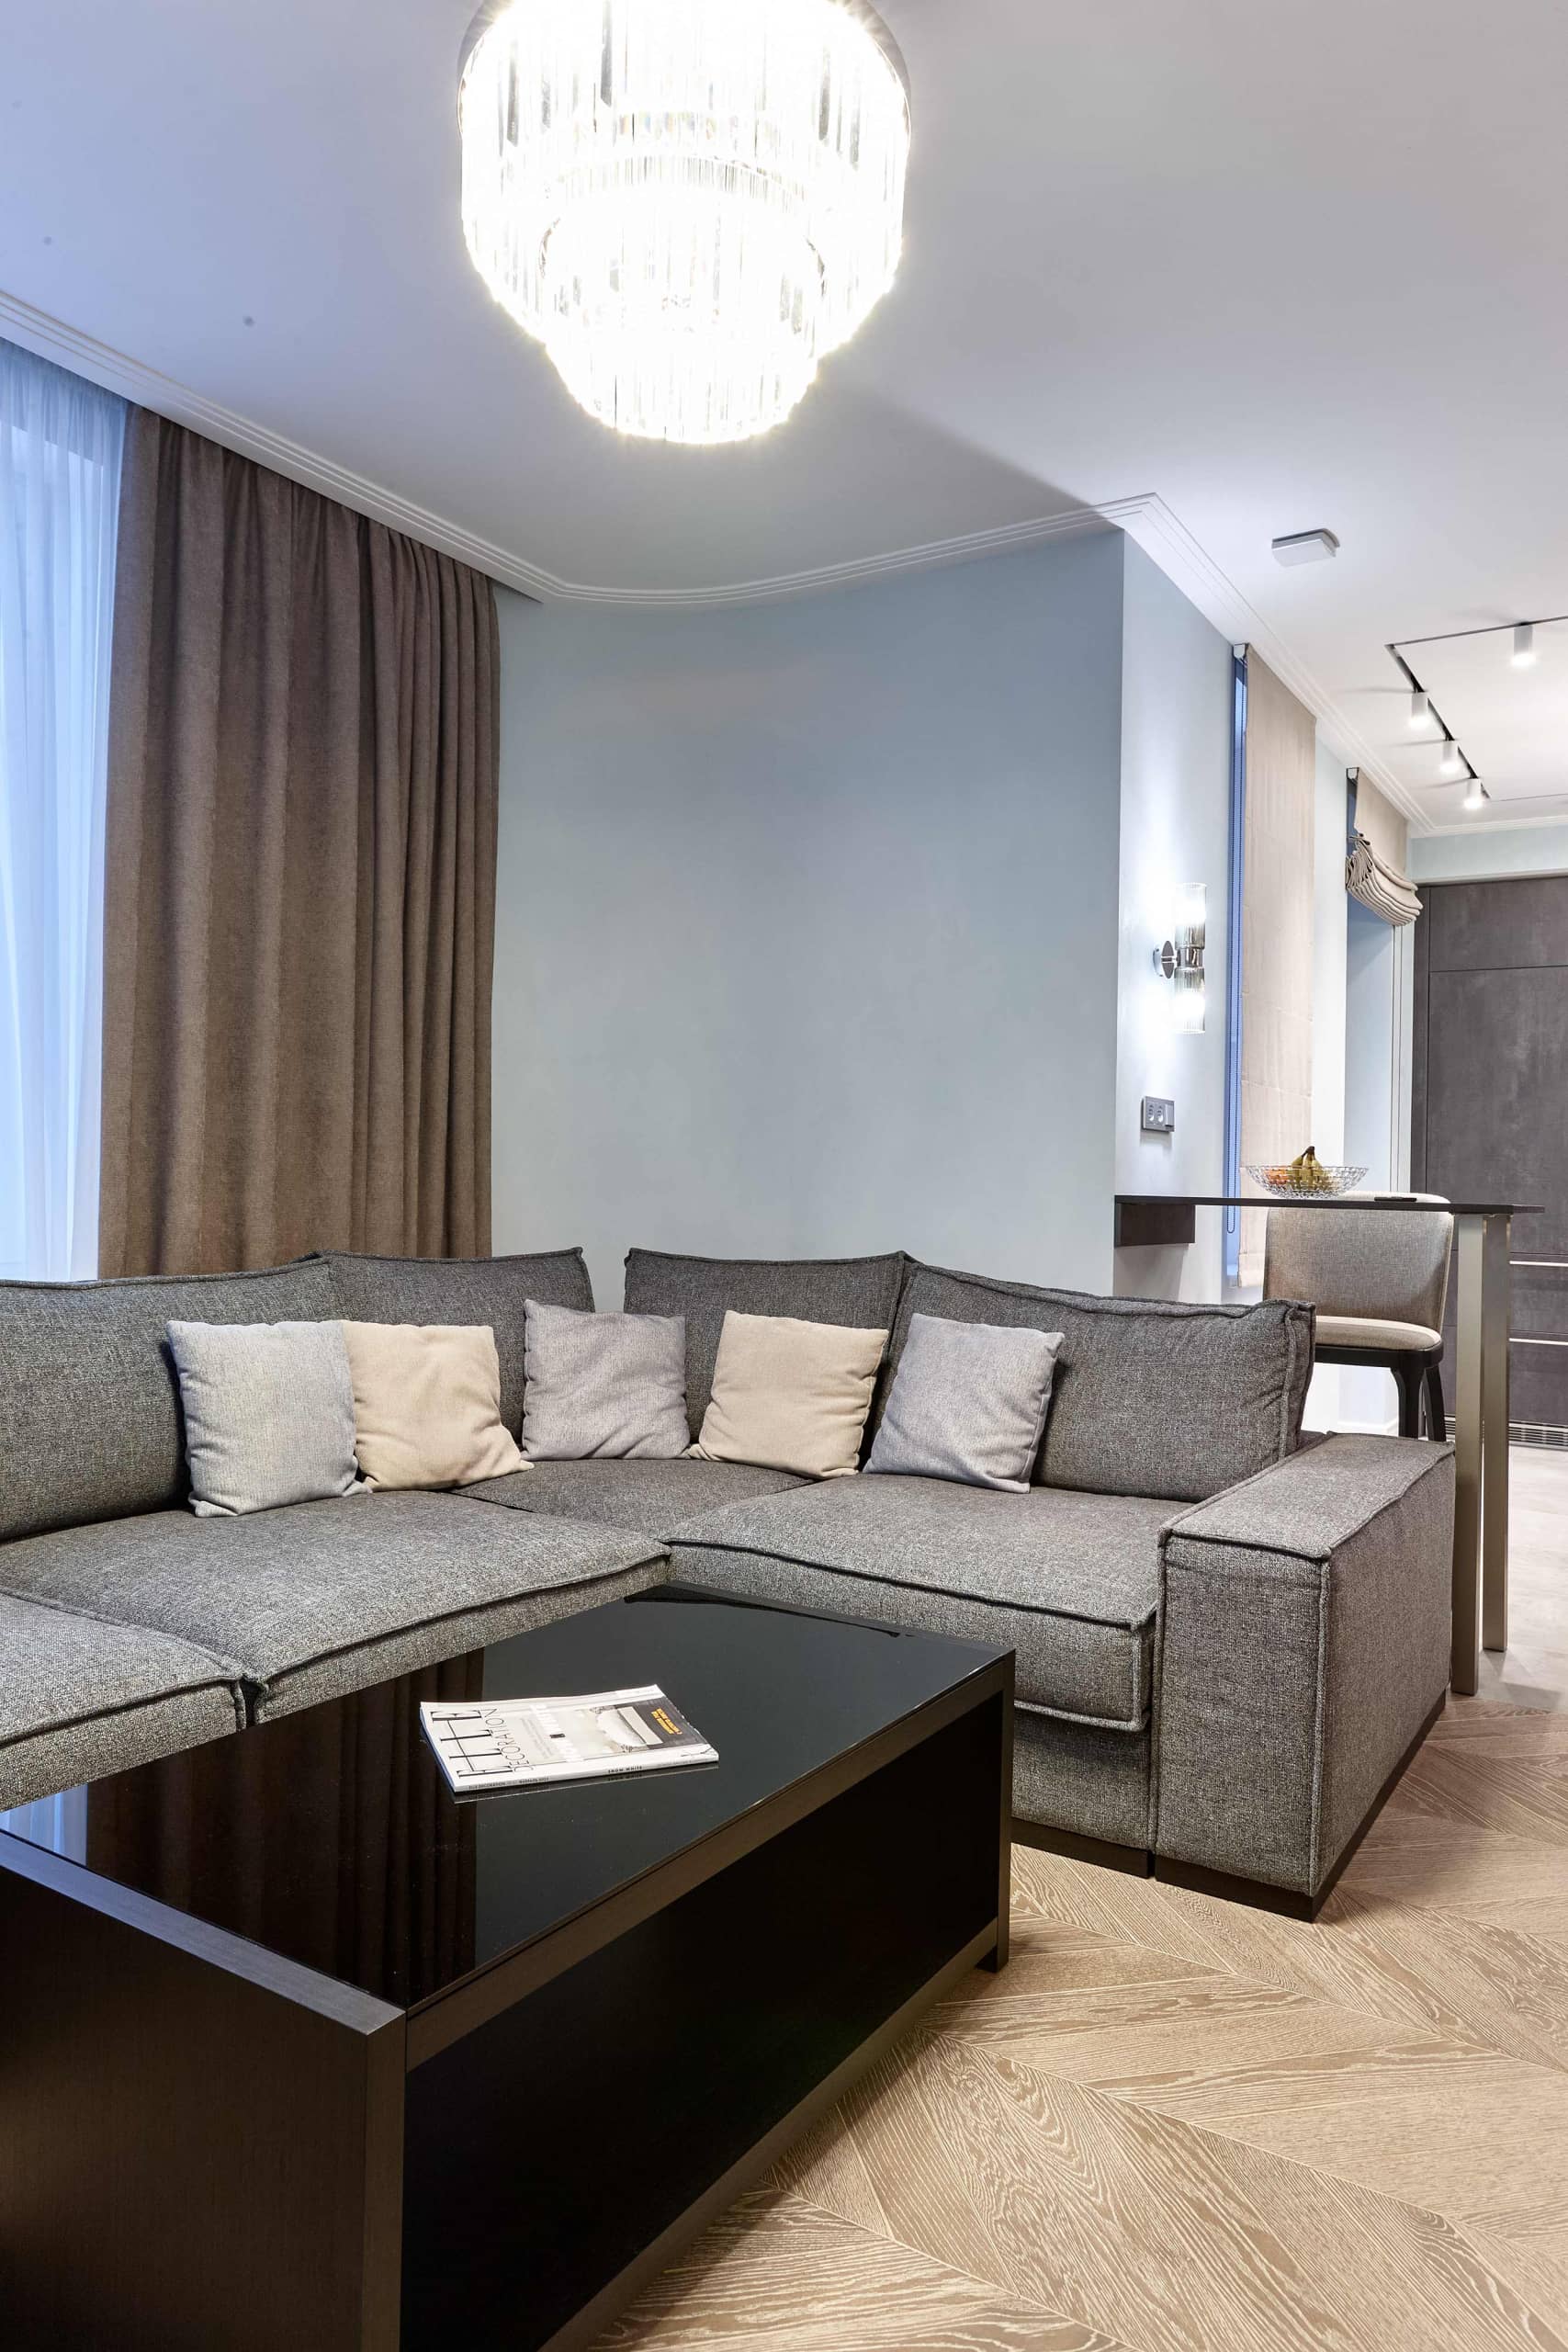 Оформление интерьера гостиной трехкомнатной квартиры в коричневый цвет в стиле современной классики. Фото № 68311.